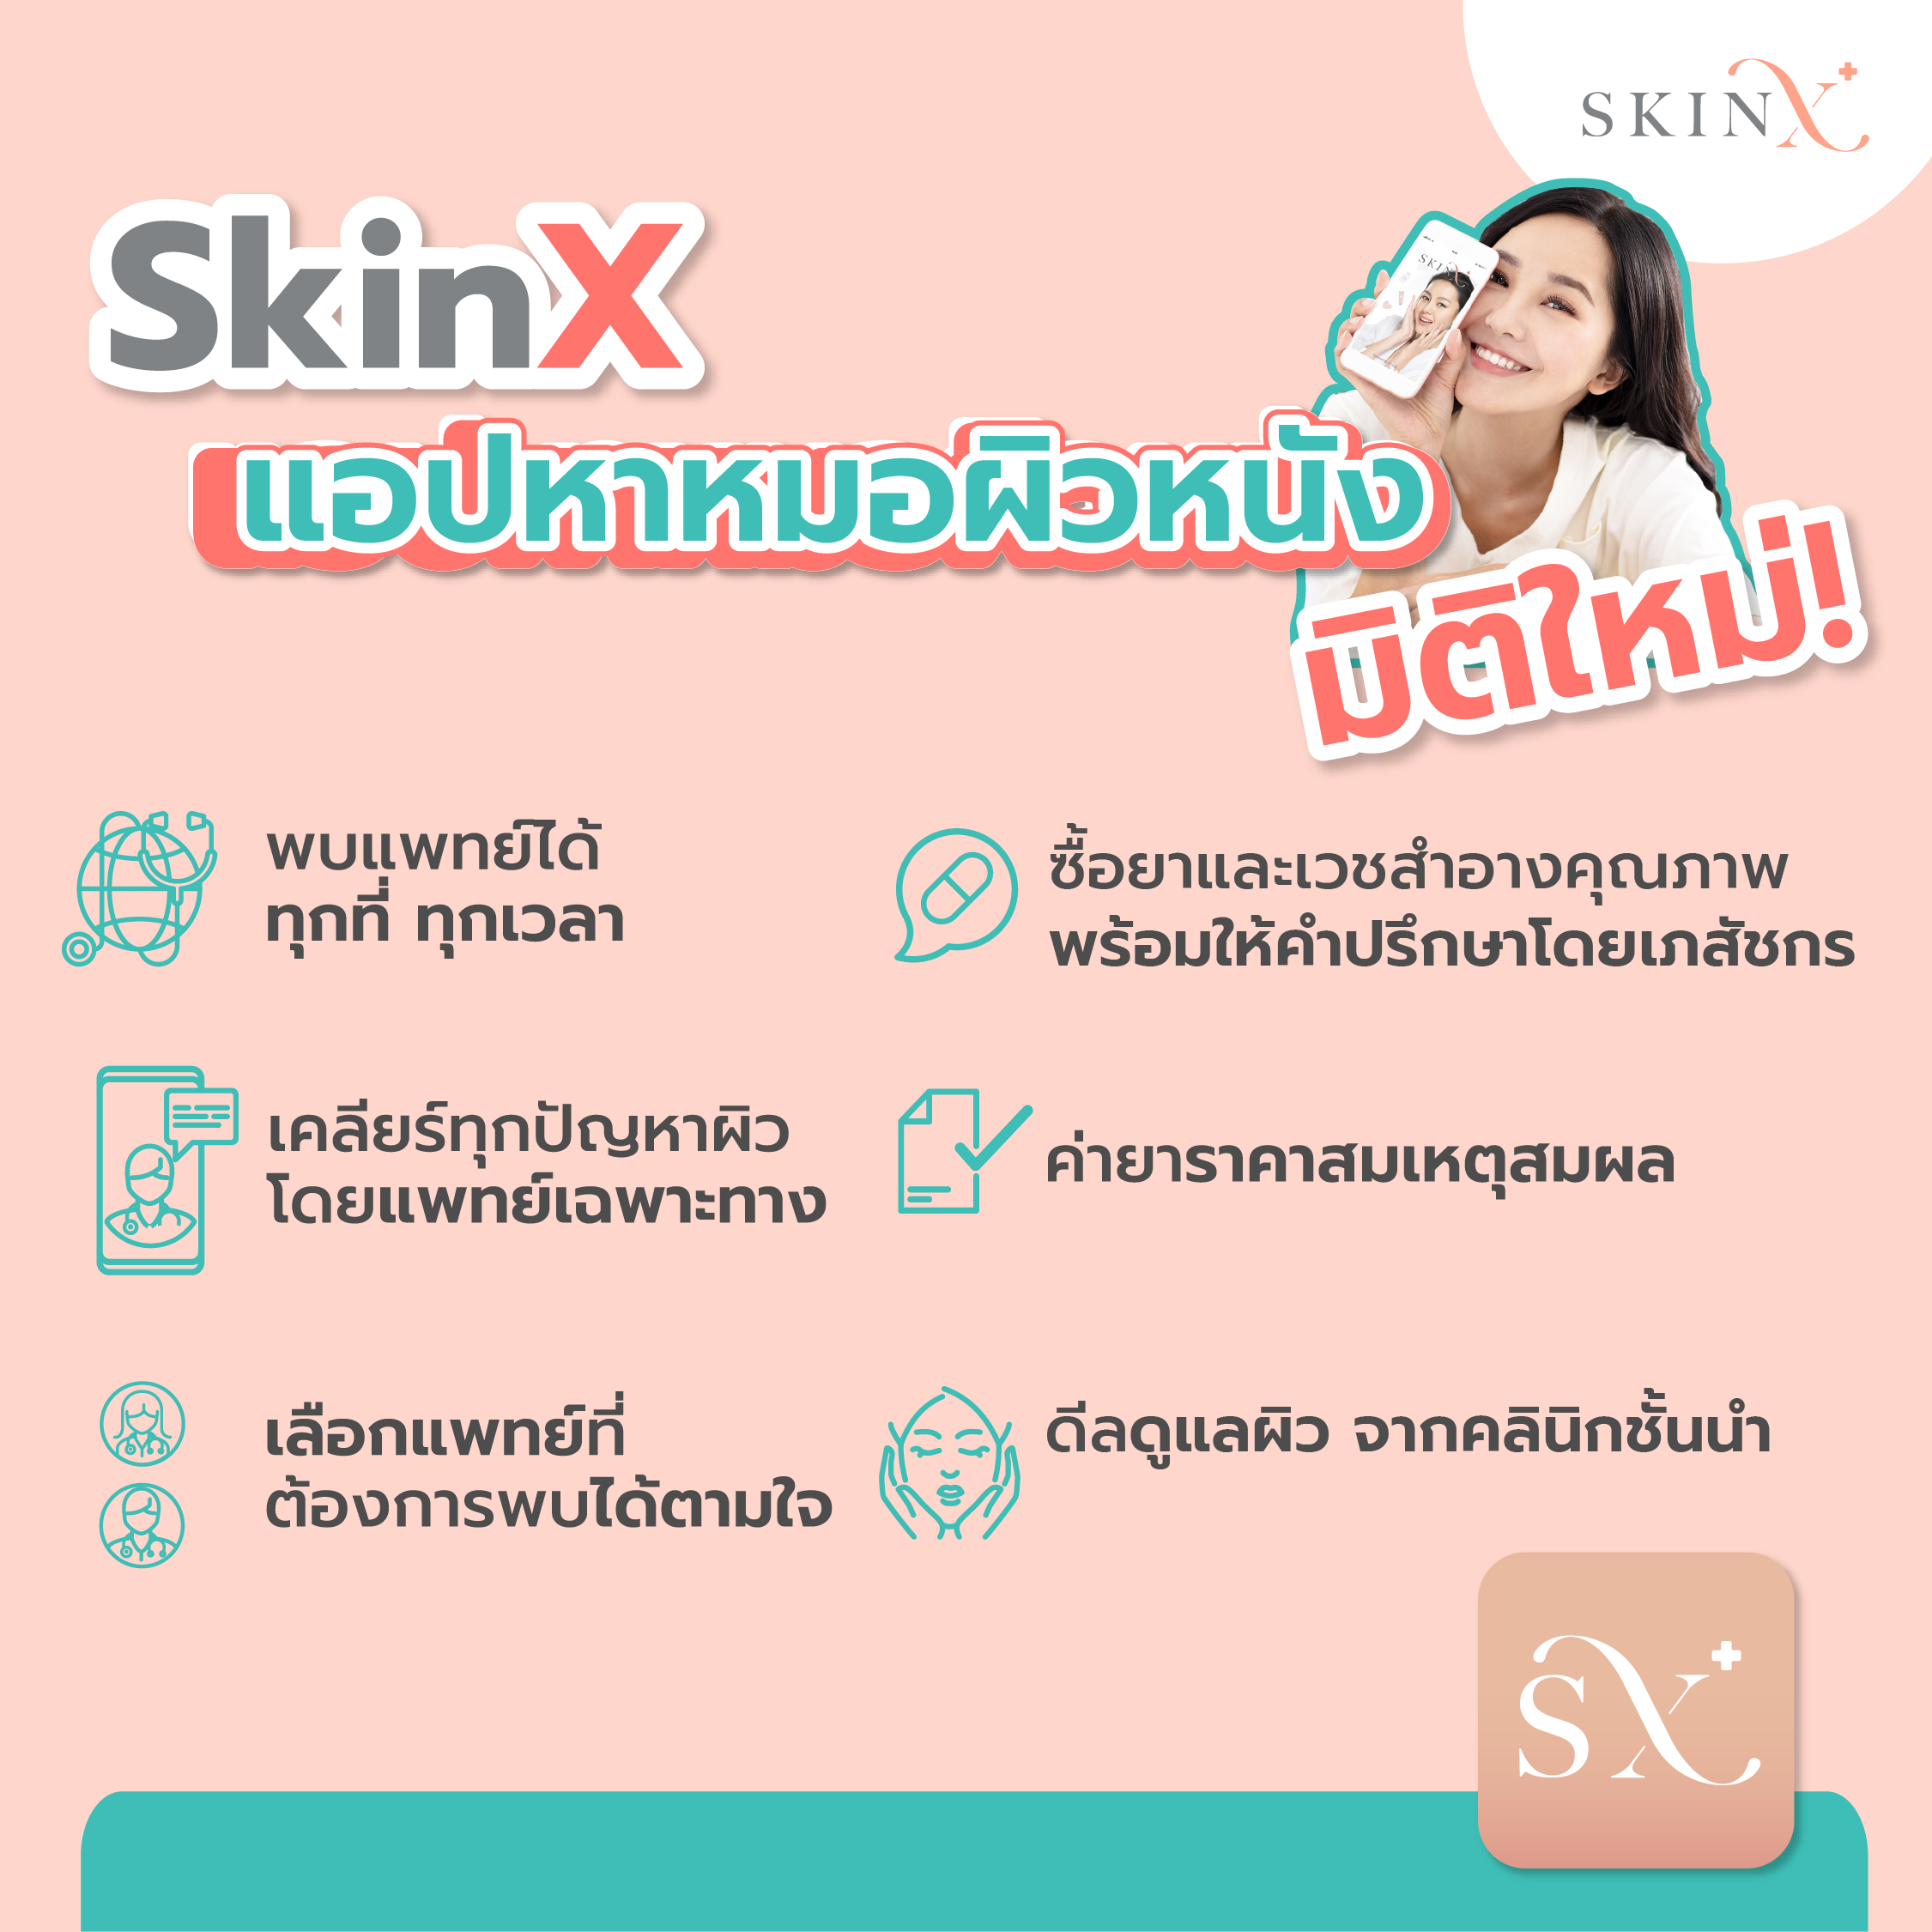 ข้อมูลเพิ่มเติมของ SkinX E-Vo ส่วนลด 2,000 บาท สำหรับทุกการใช้จ่ายใน SkinX